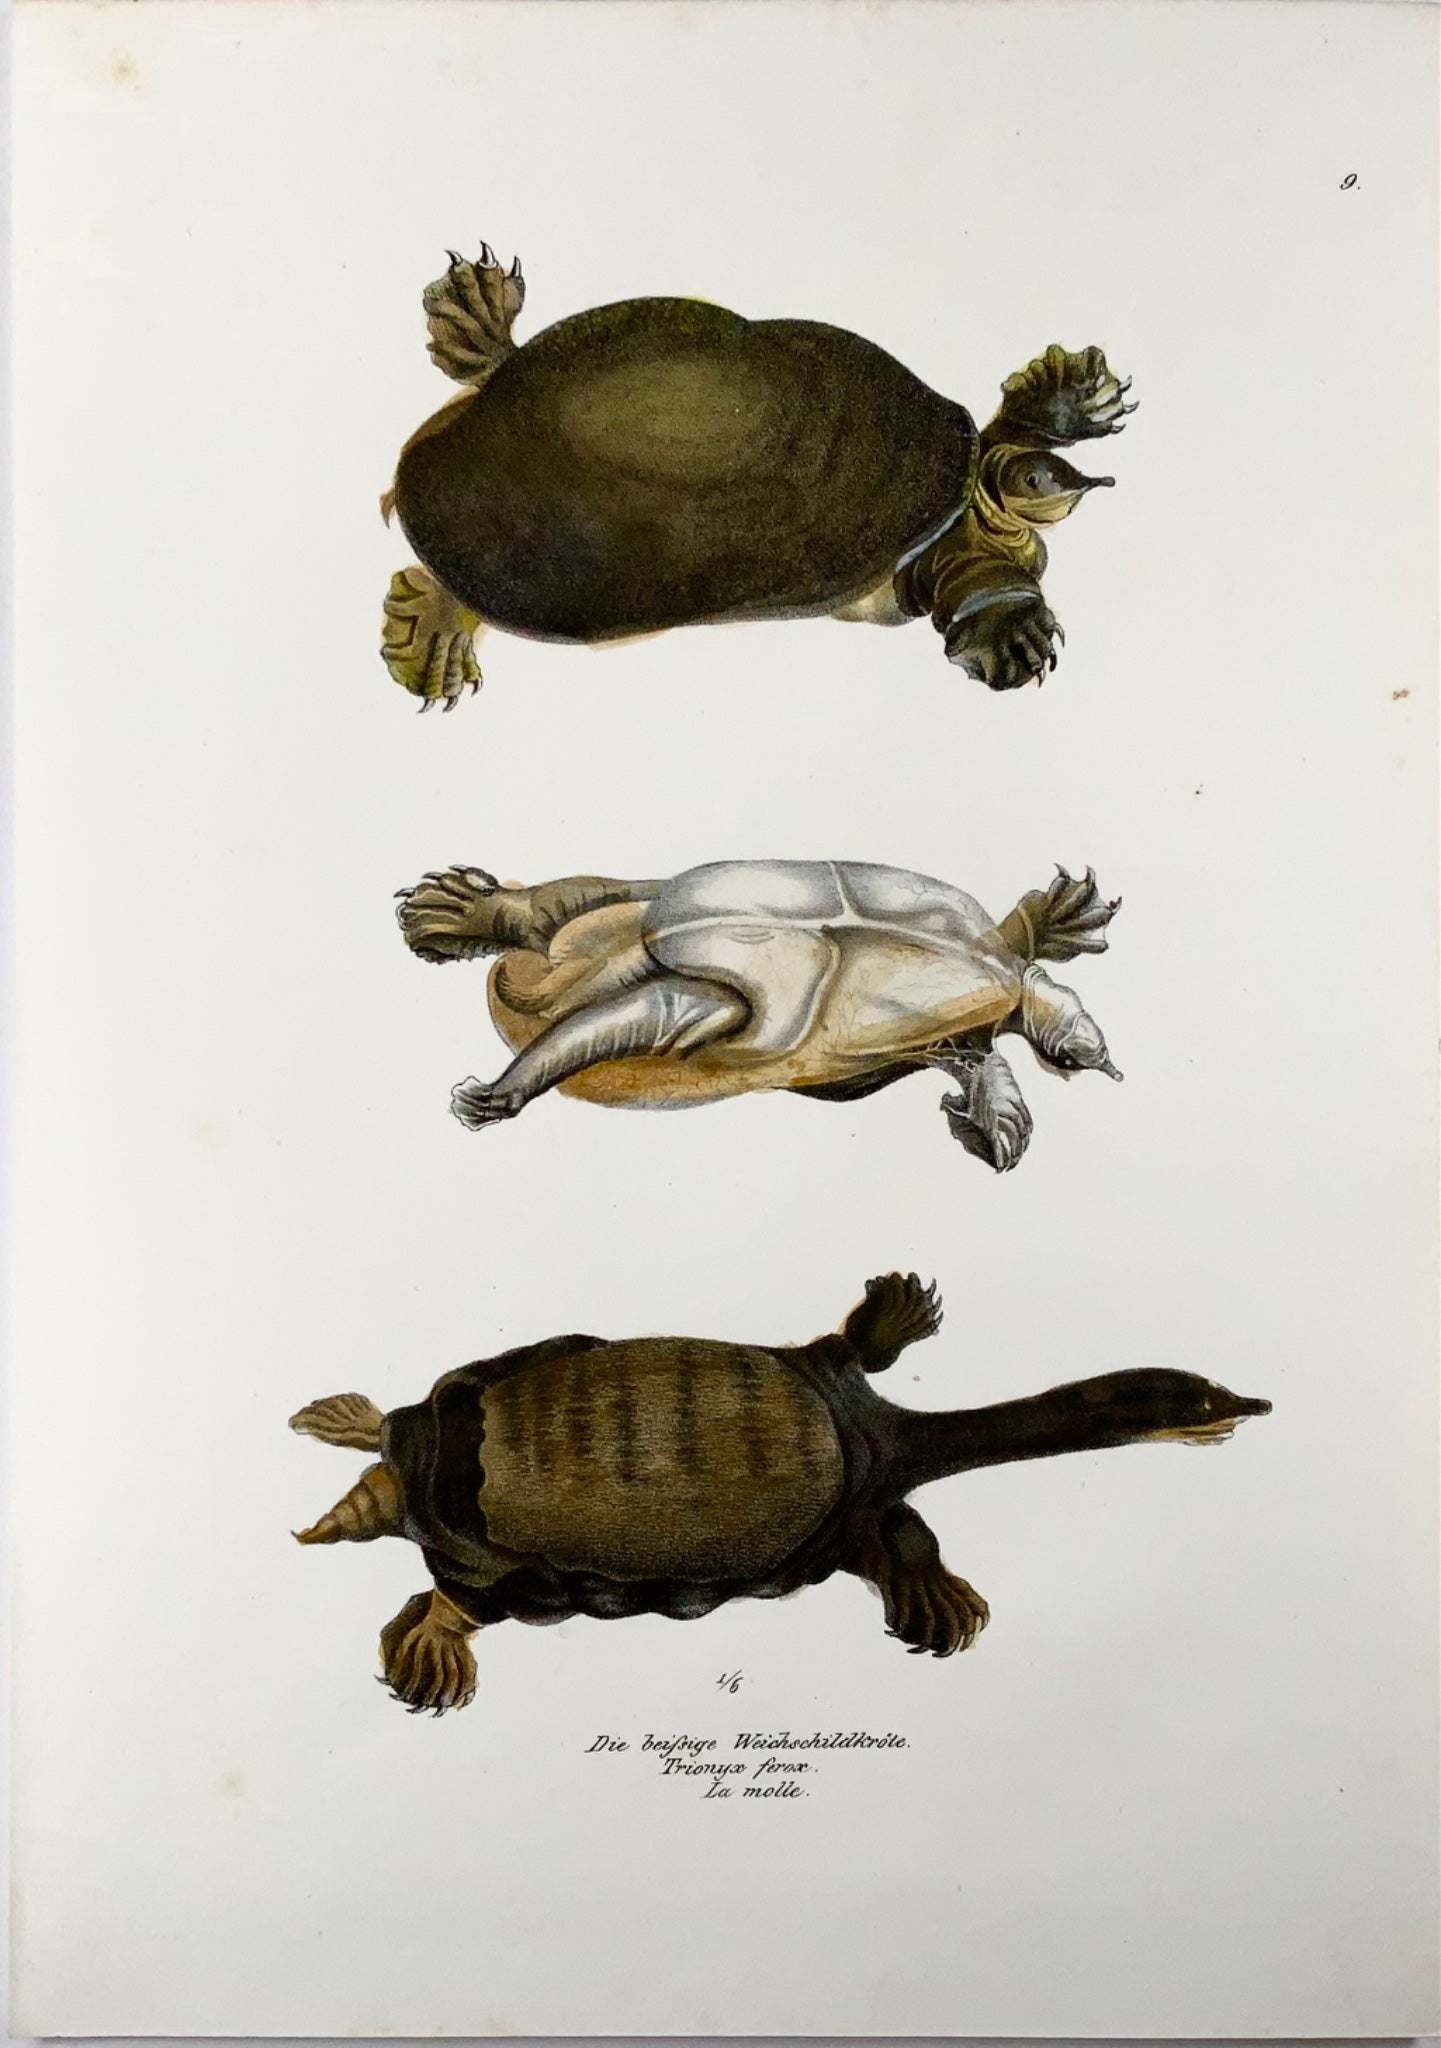 1833 Tartaruga dal guscio molle della Florida, anfibi, Schinz, litografia colorata a mano